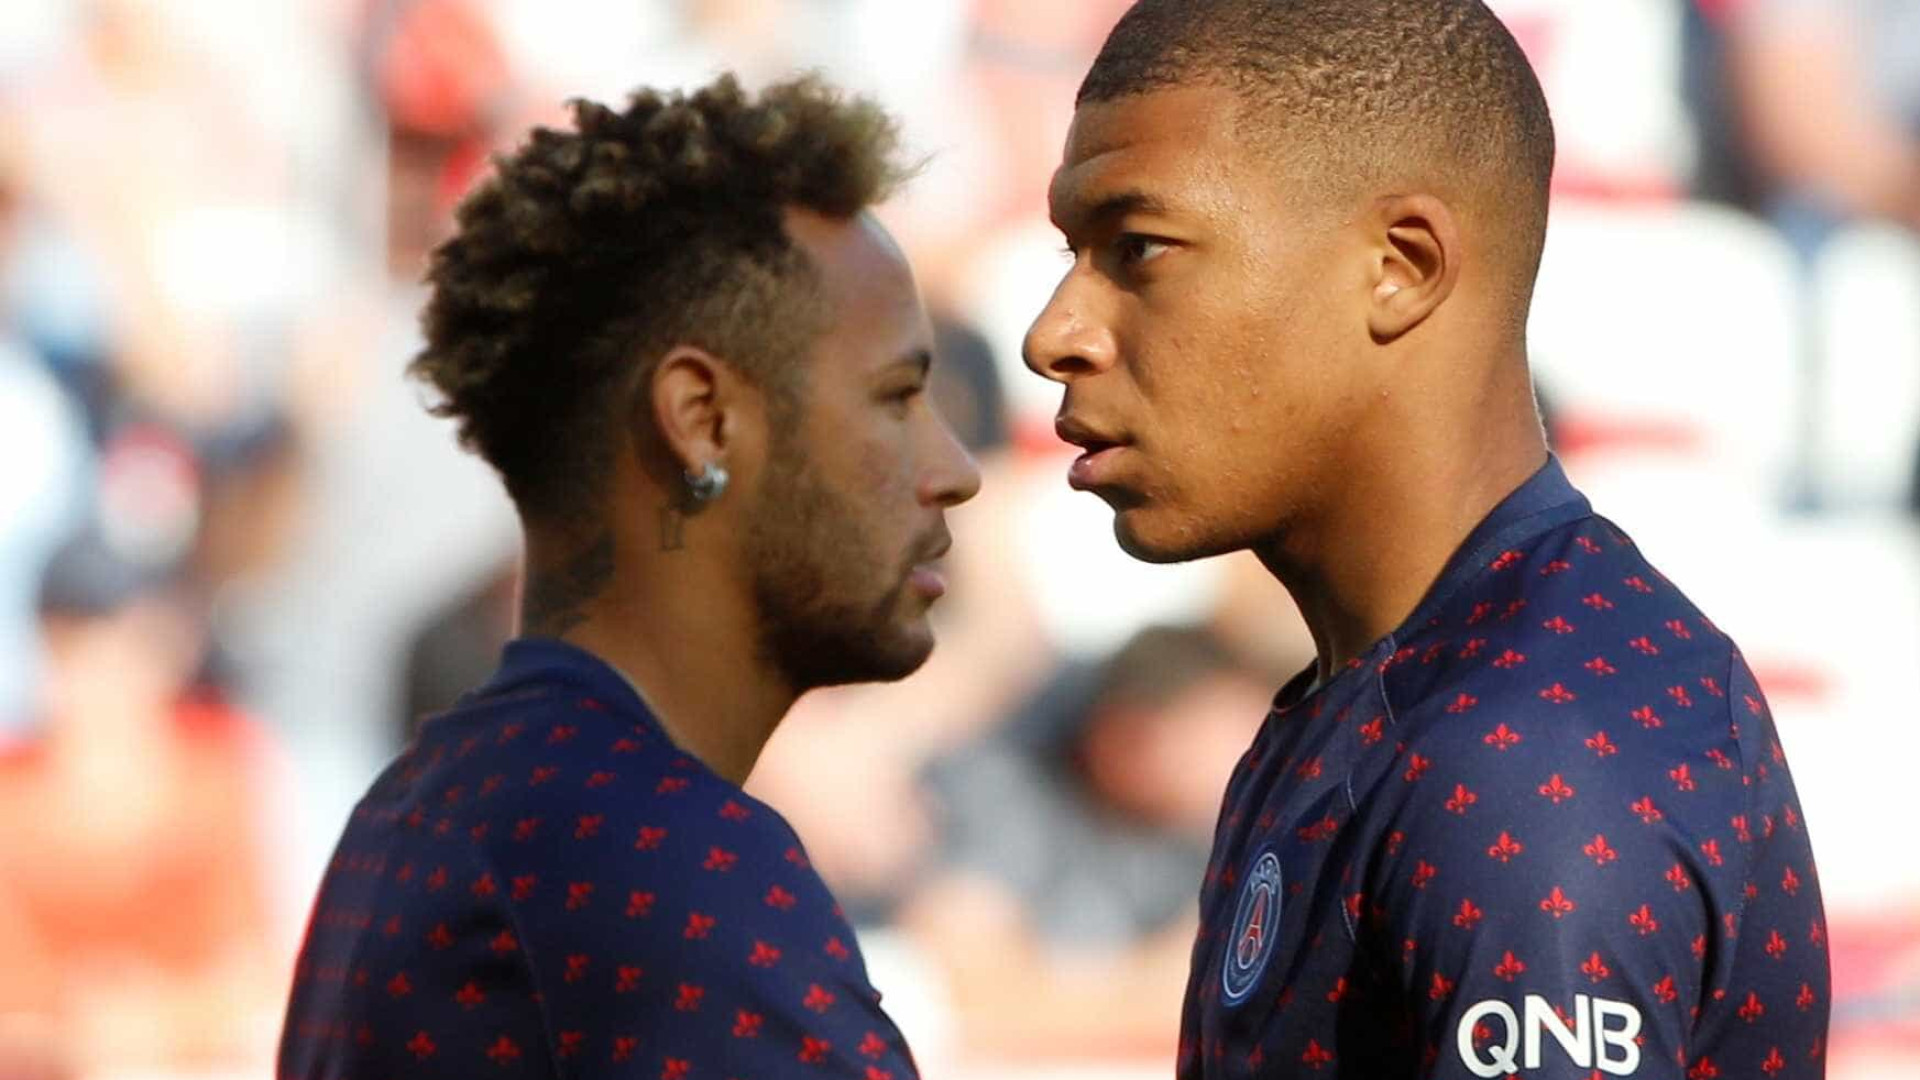 PSG confirma lesões de Neymar e Mbappé, mas não dá prazo de recuperação